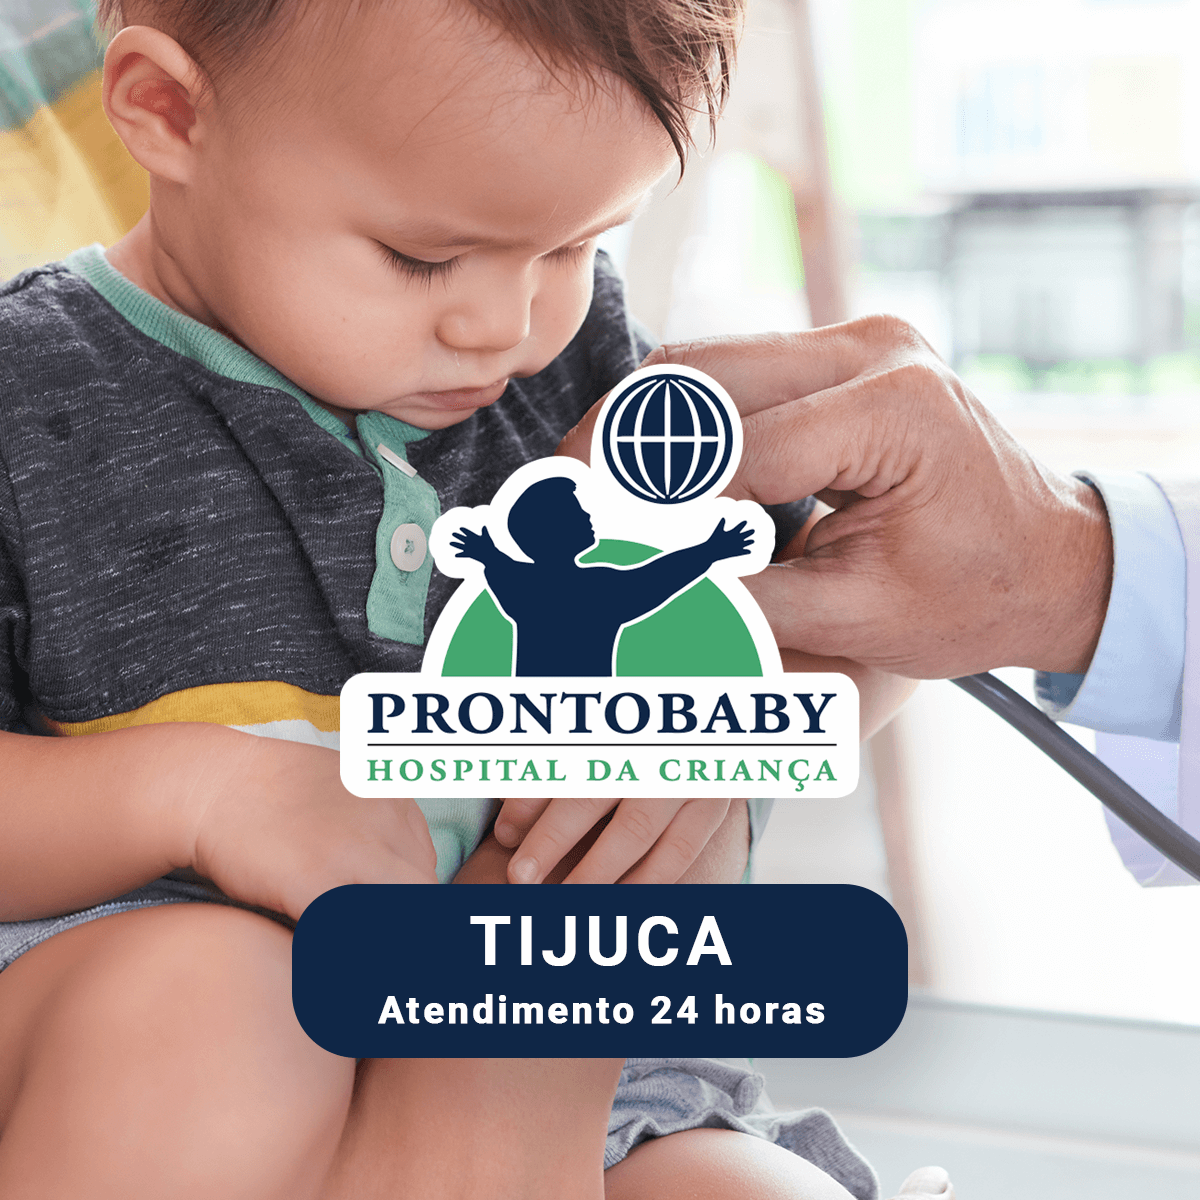 Prontobaby Hospital da Criança - Tijuca